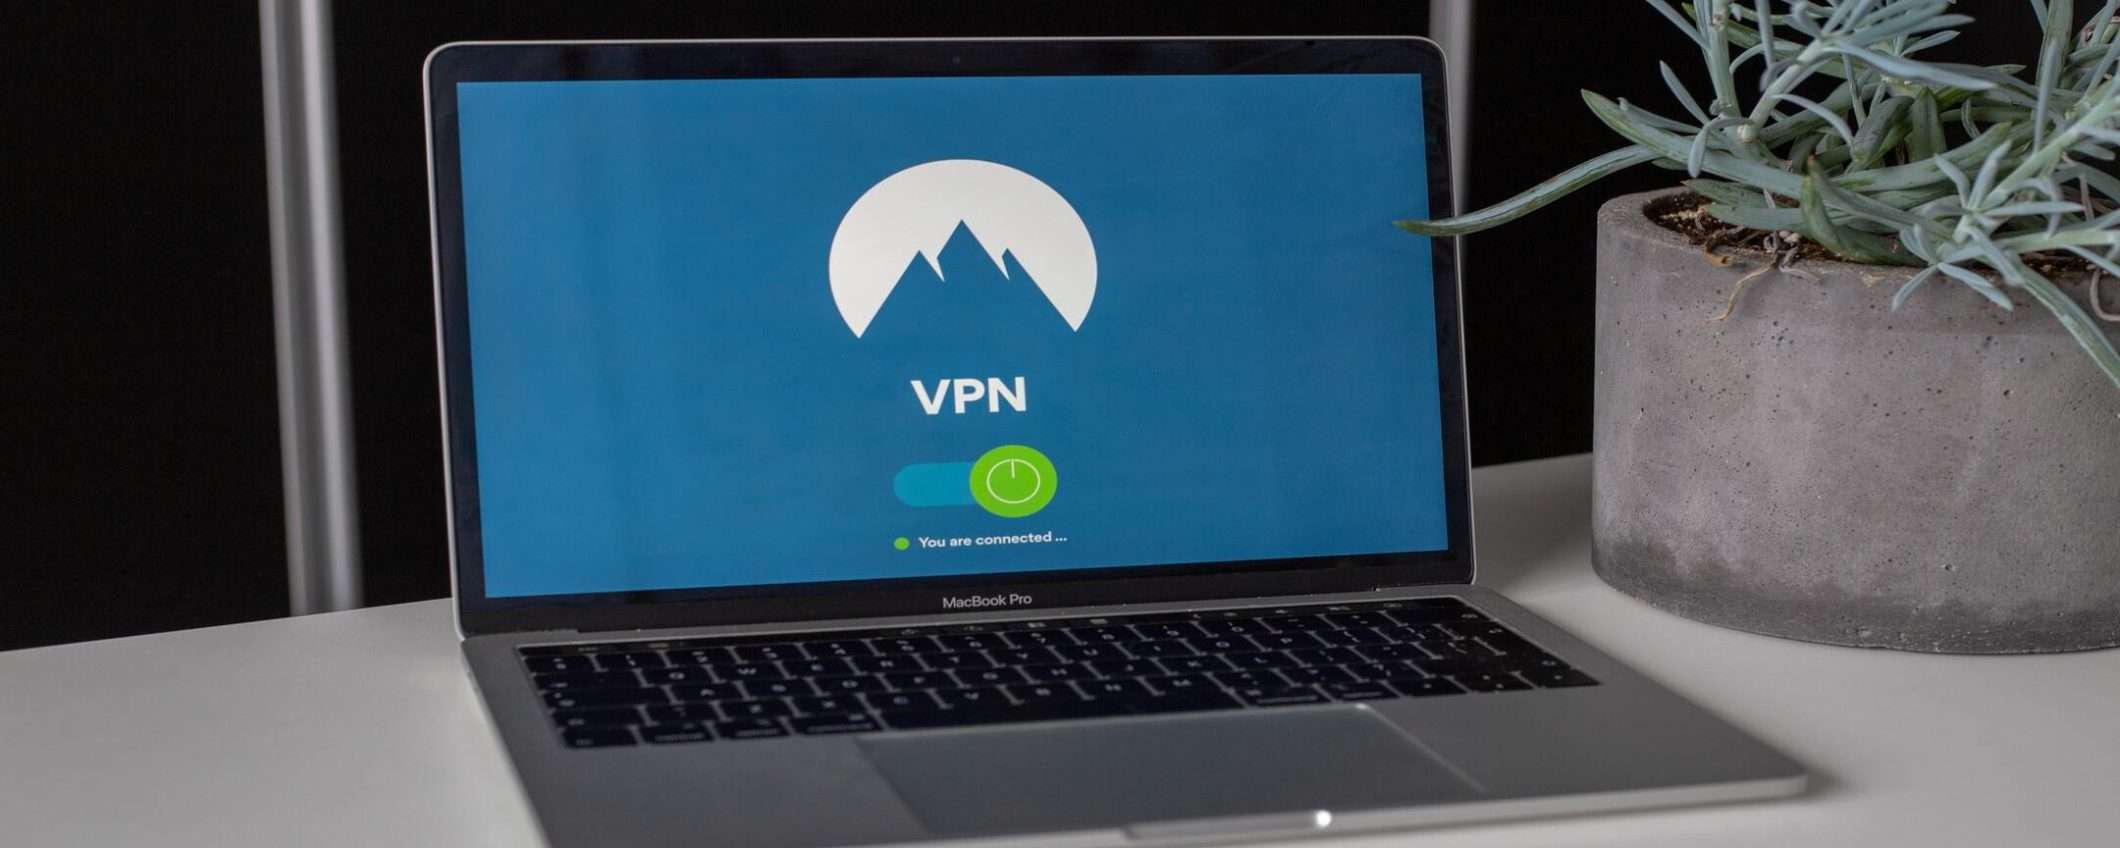 Servizi VPN sempre più importanti, ecco il motivo